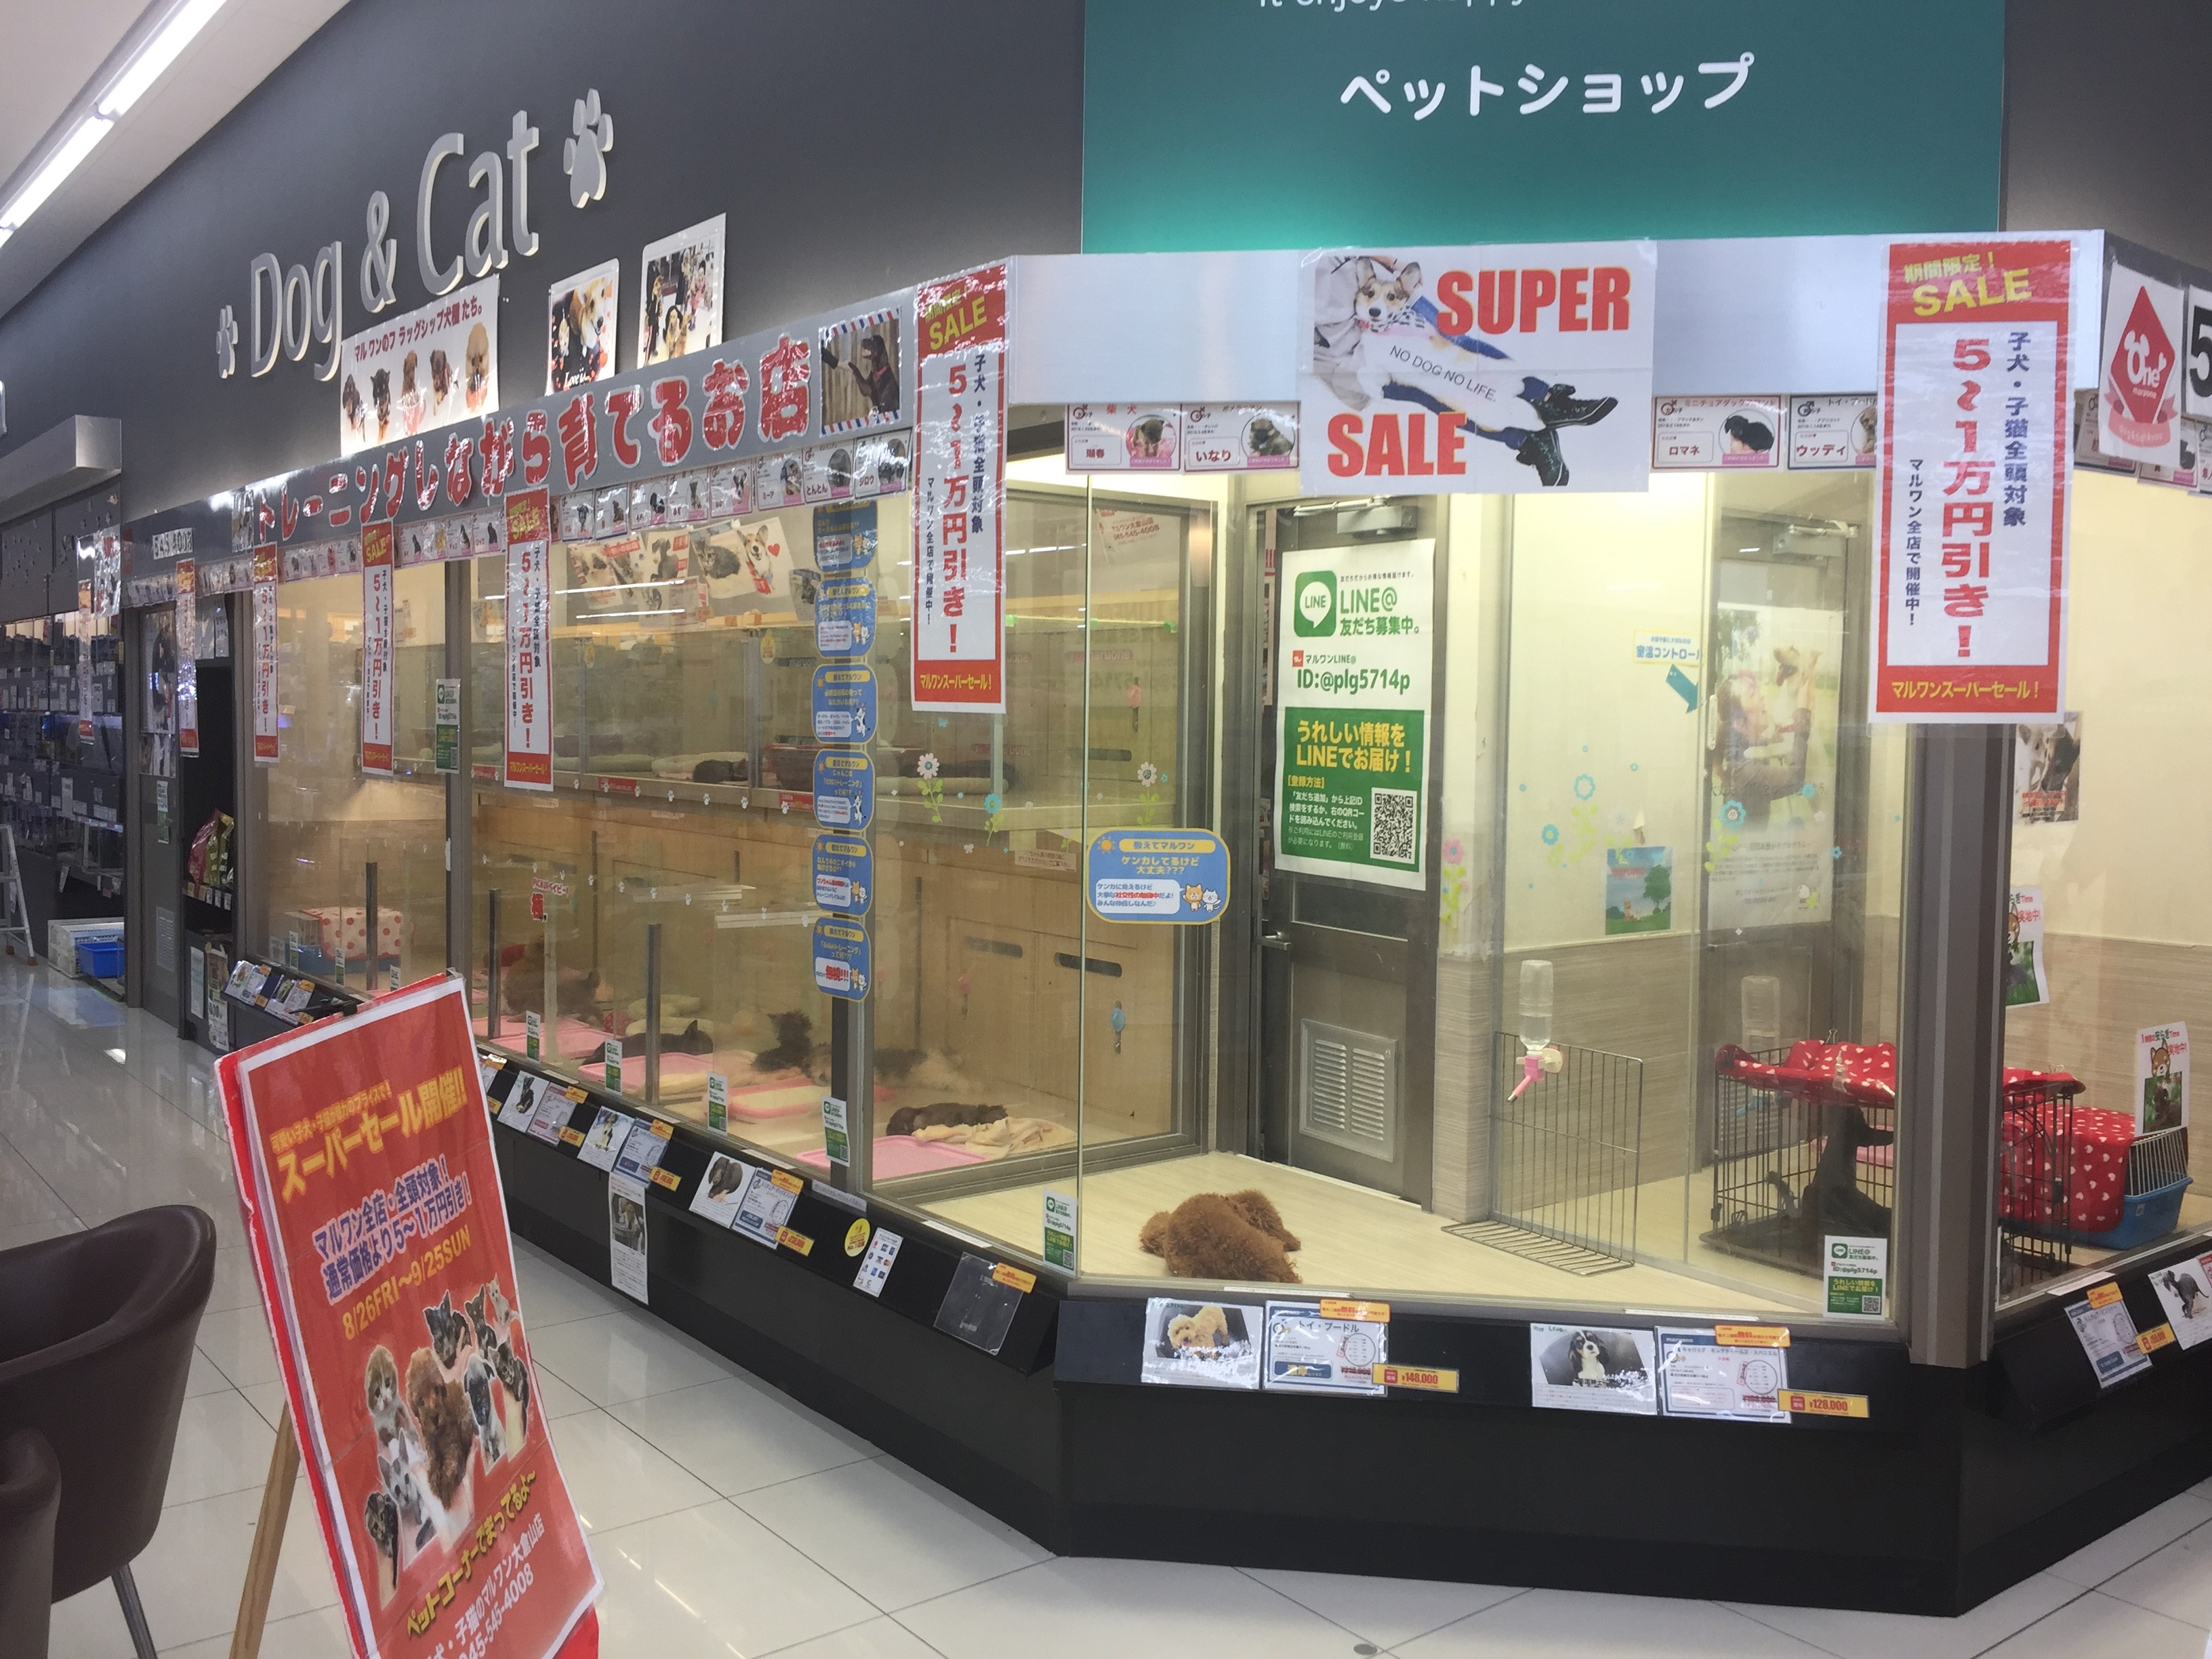 大倉山店 SALE INFORMATION